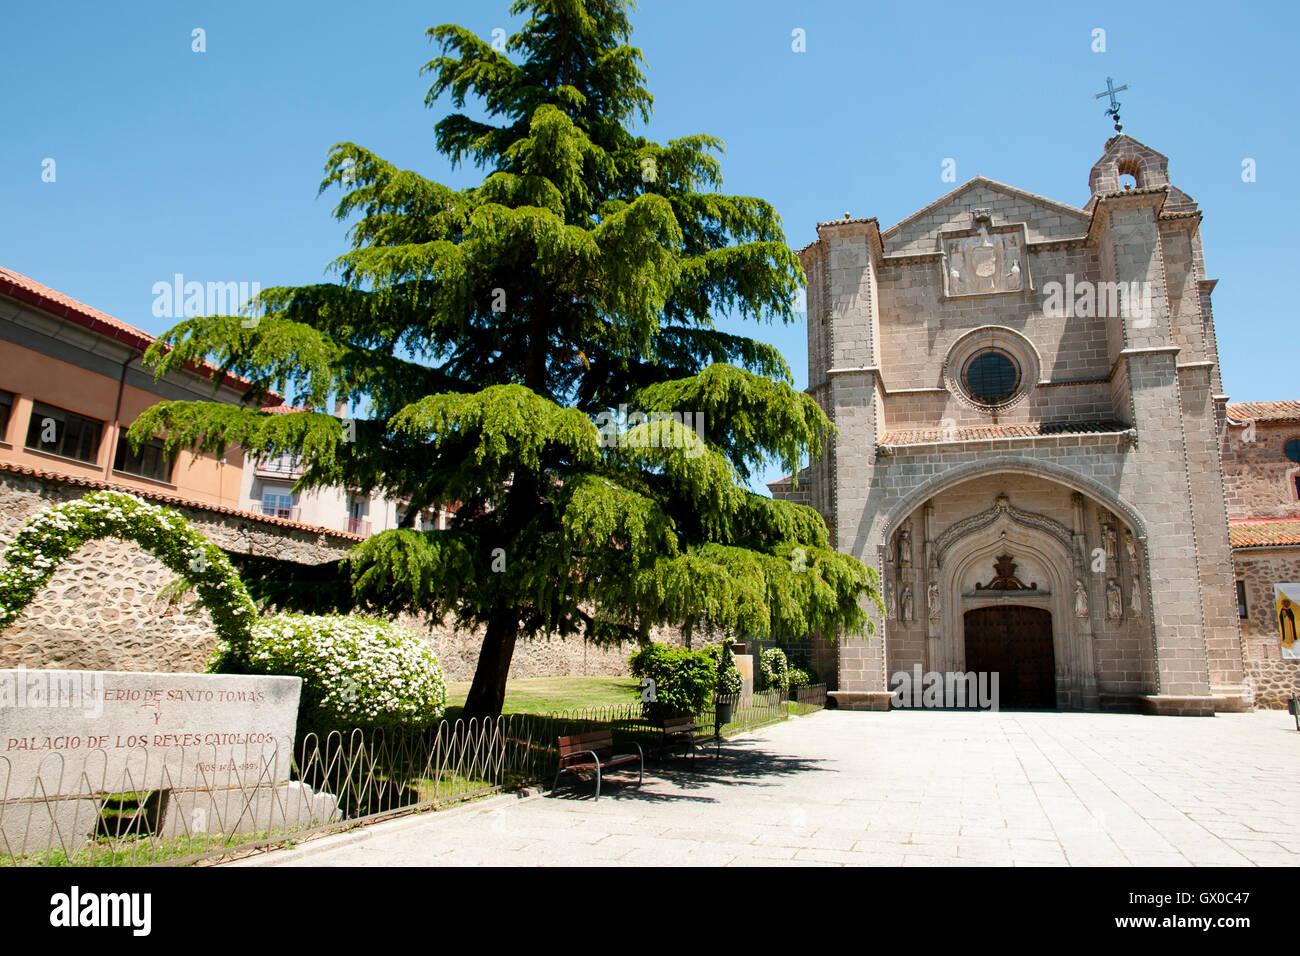 St Thomas Royal Monastery - Avila - Spain Stock Photo